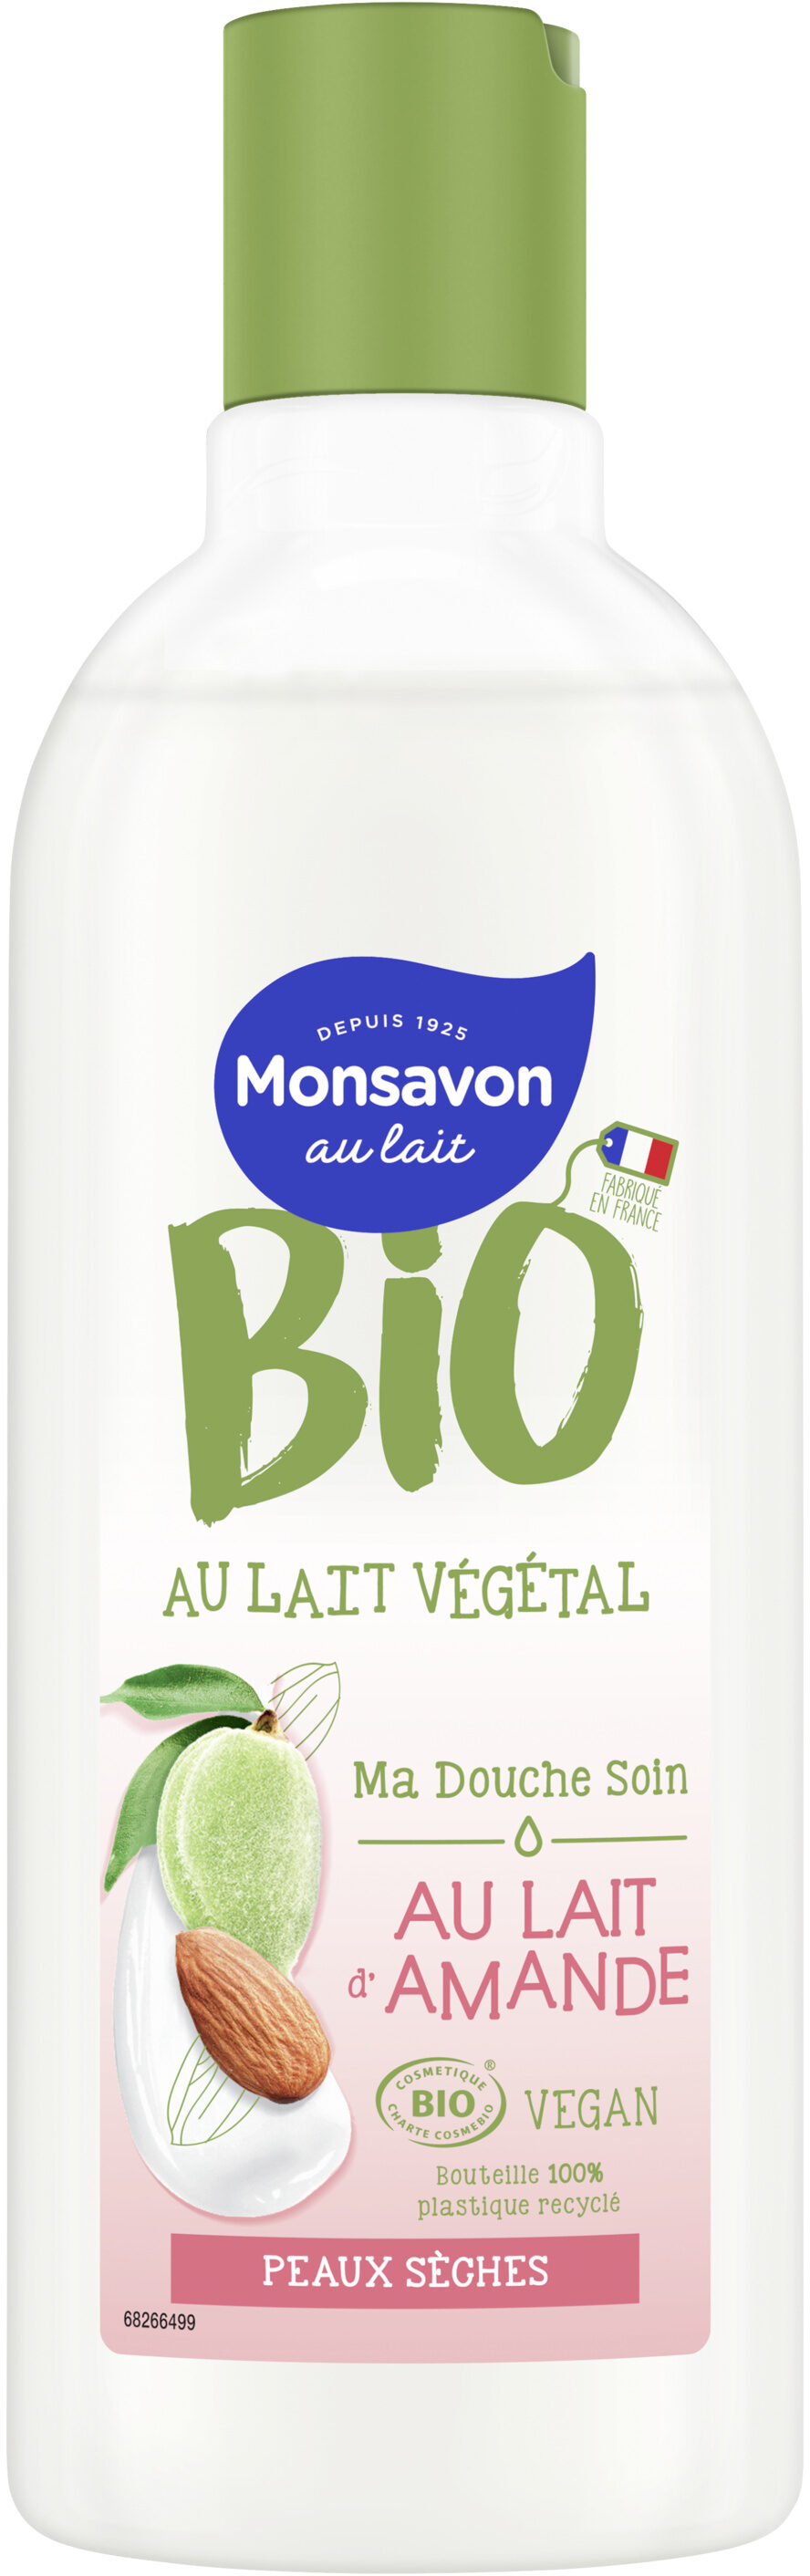 Monsavon Gel Douche Certifié Bio et Vegan Au Lait d'Amande 300ml - Produit - fr